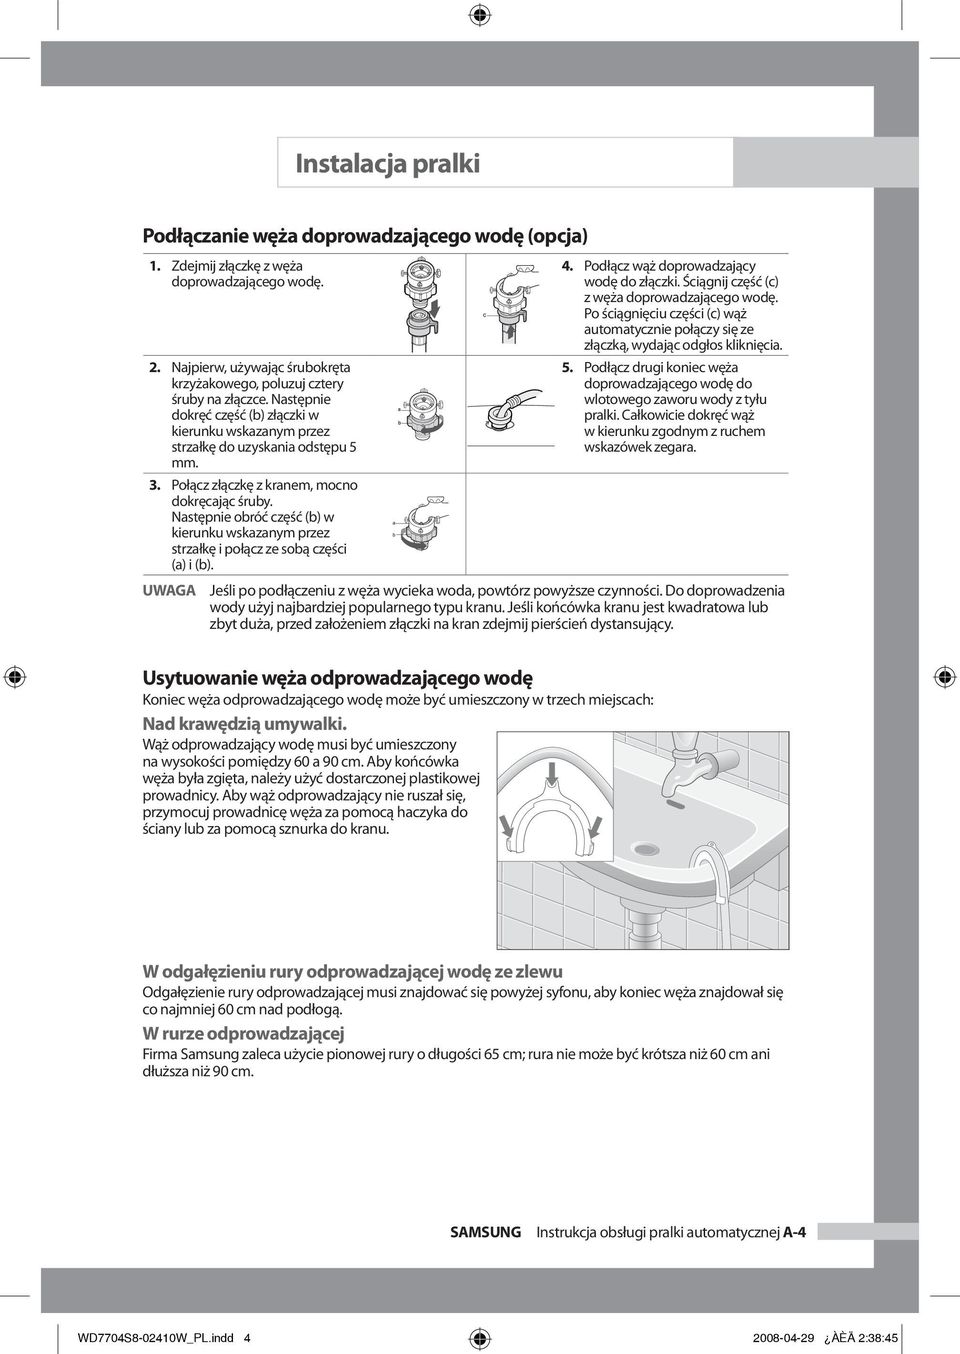 Instrukcja obsługi pralki automatycznej - PDF Darmowe pobieranie